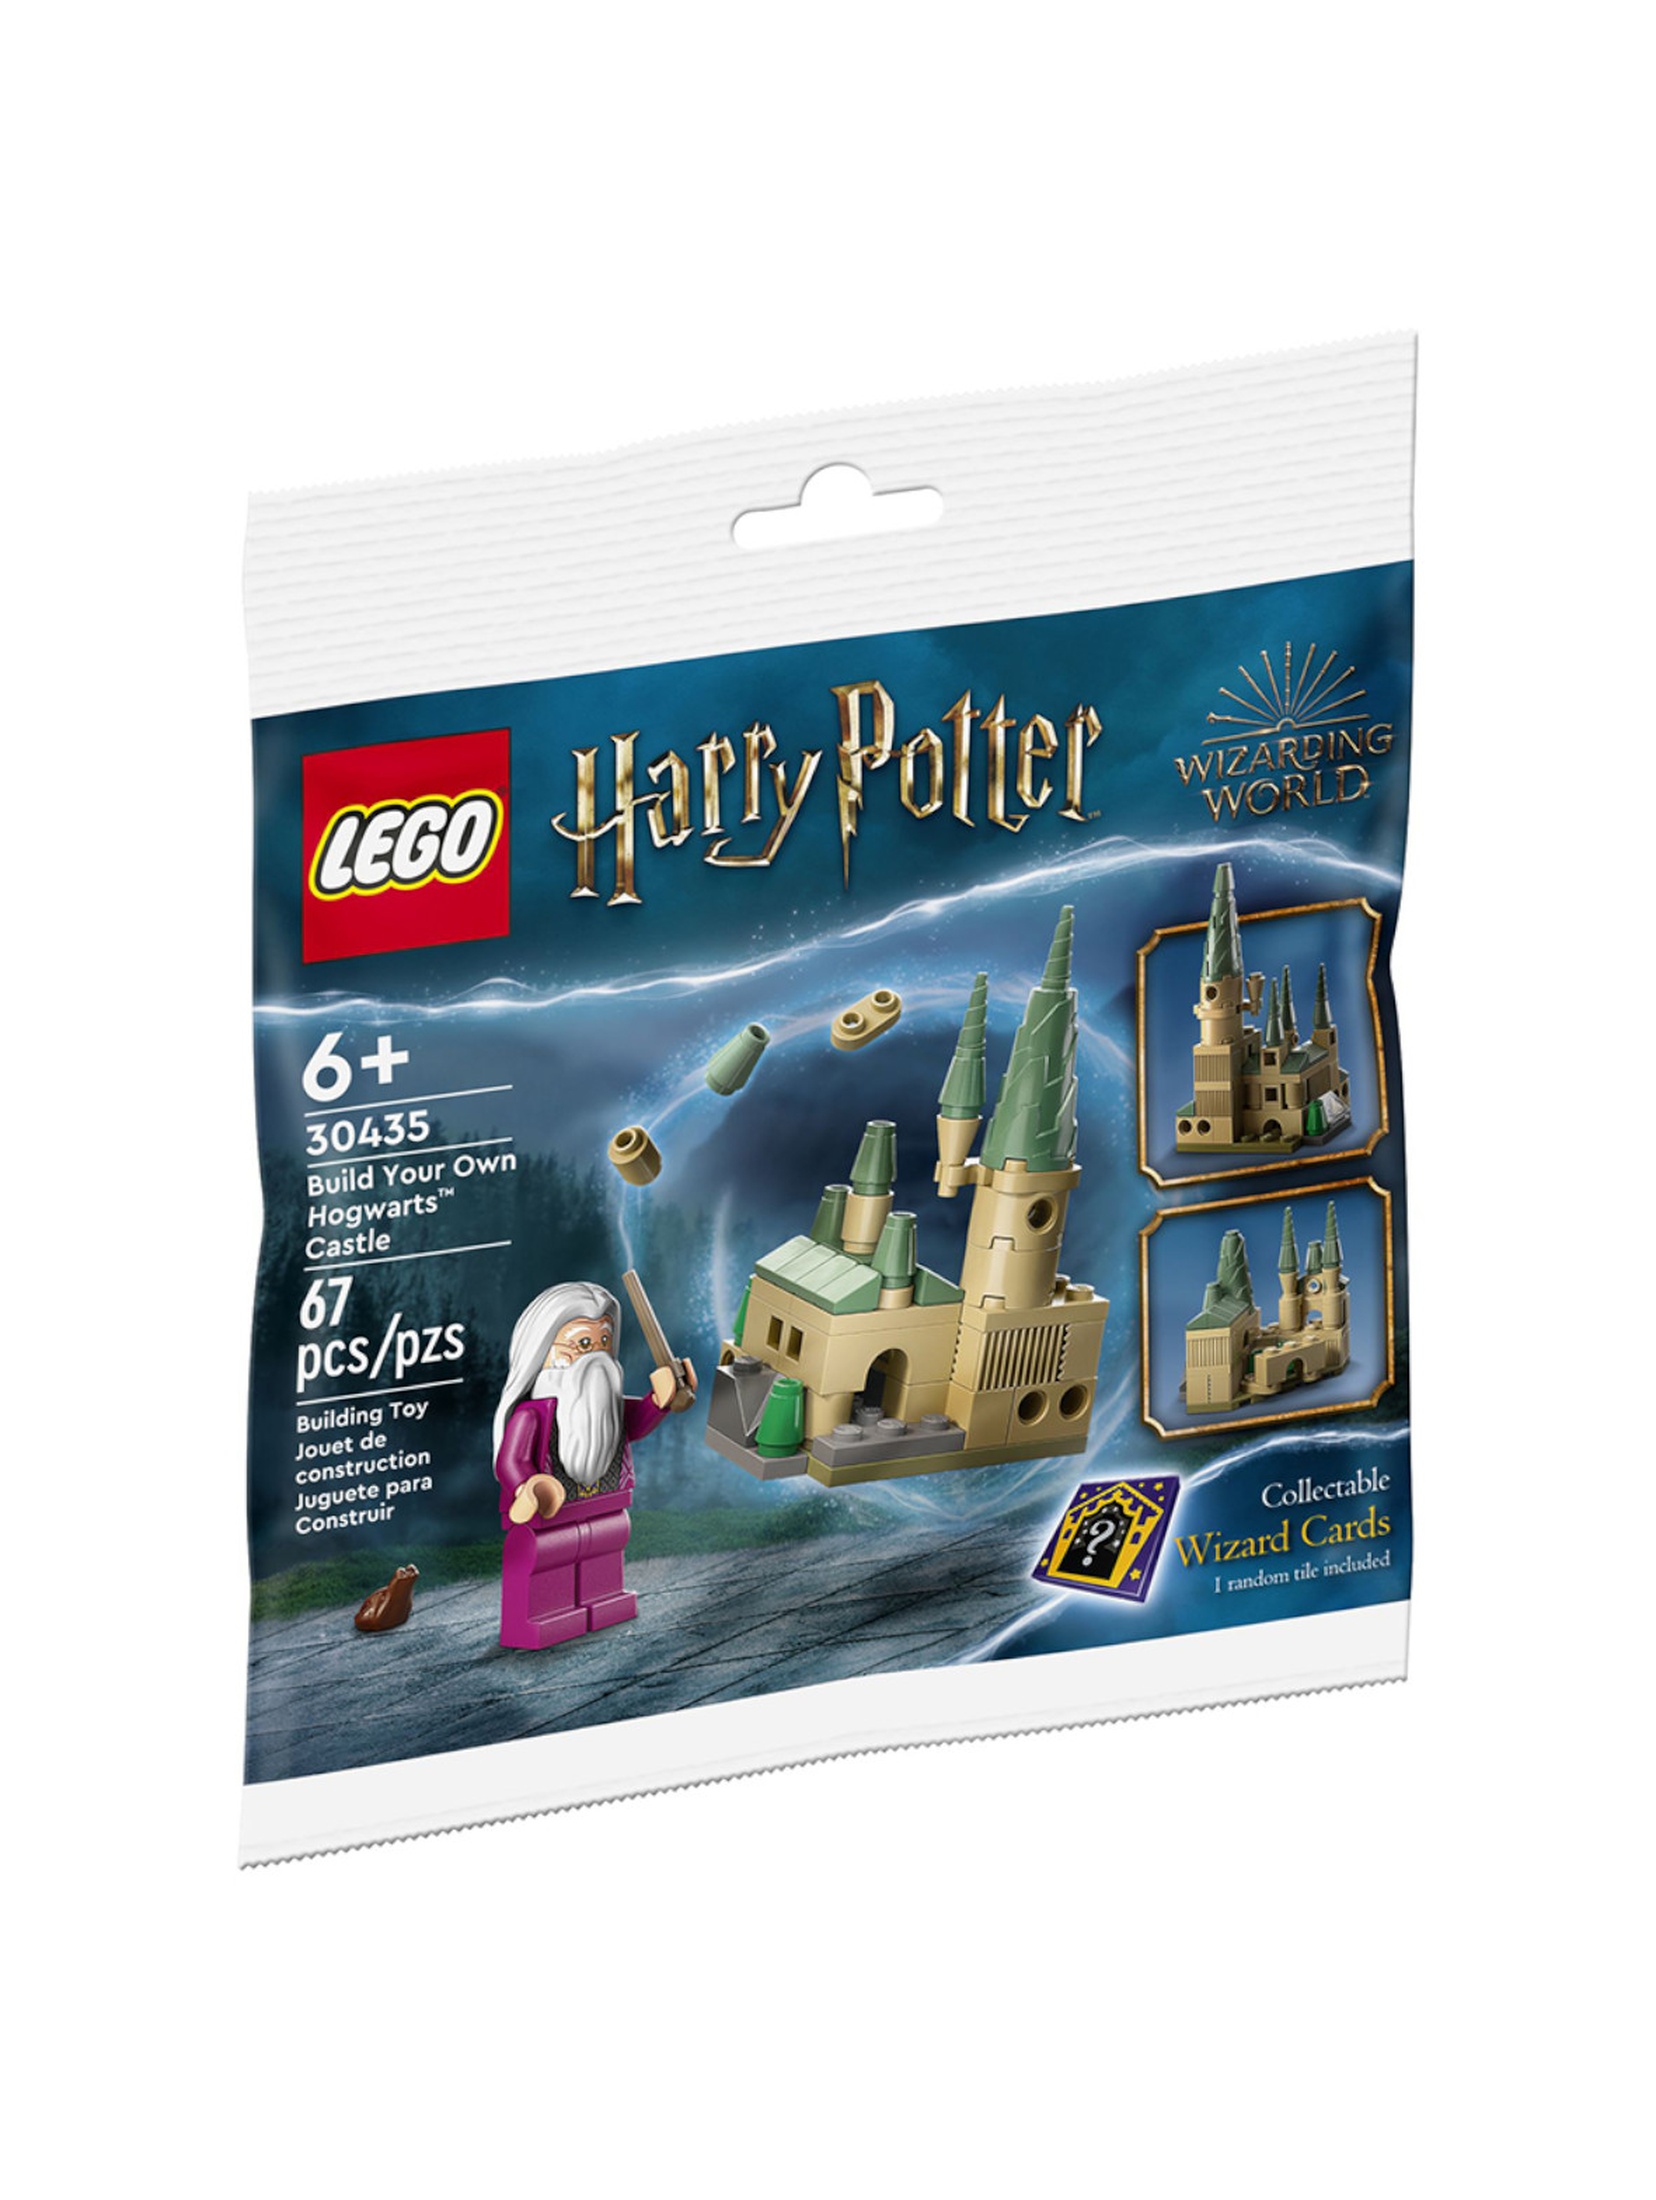 Klocki LEGO Harry Potter 30435 Zbuduj własny zamek Hogwart - 67 elementów, wiek 6 +